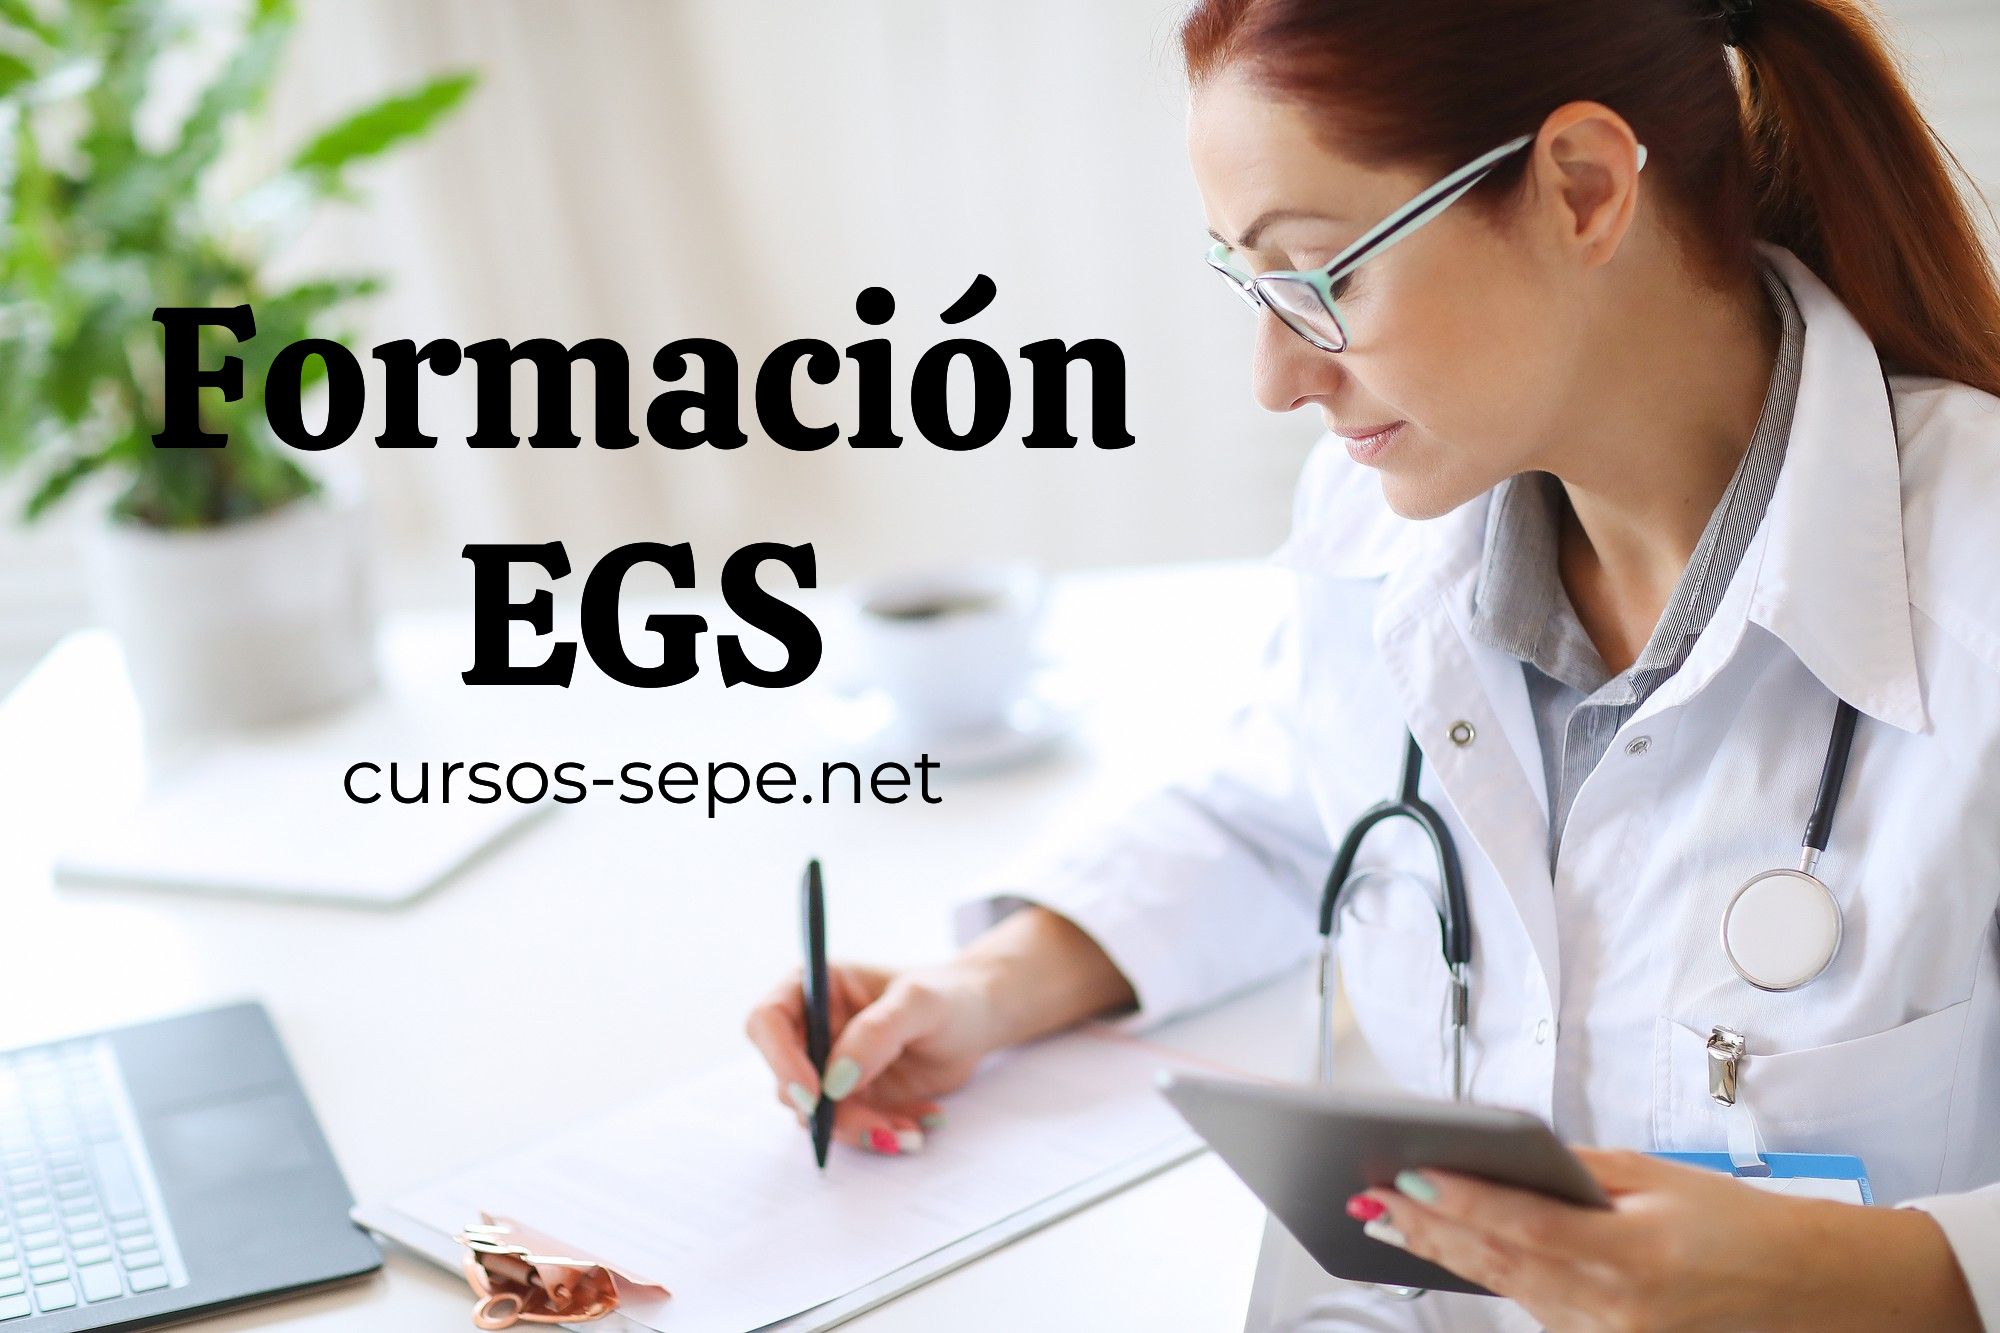 Accede a todas las formaciones de EGS para ampliar tus conocimientos y certificaciones en el sector médico.